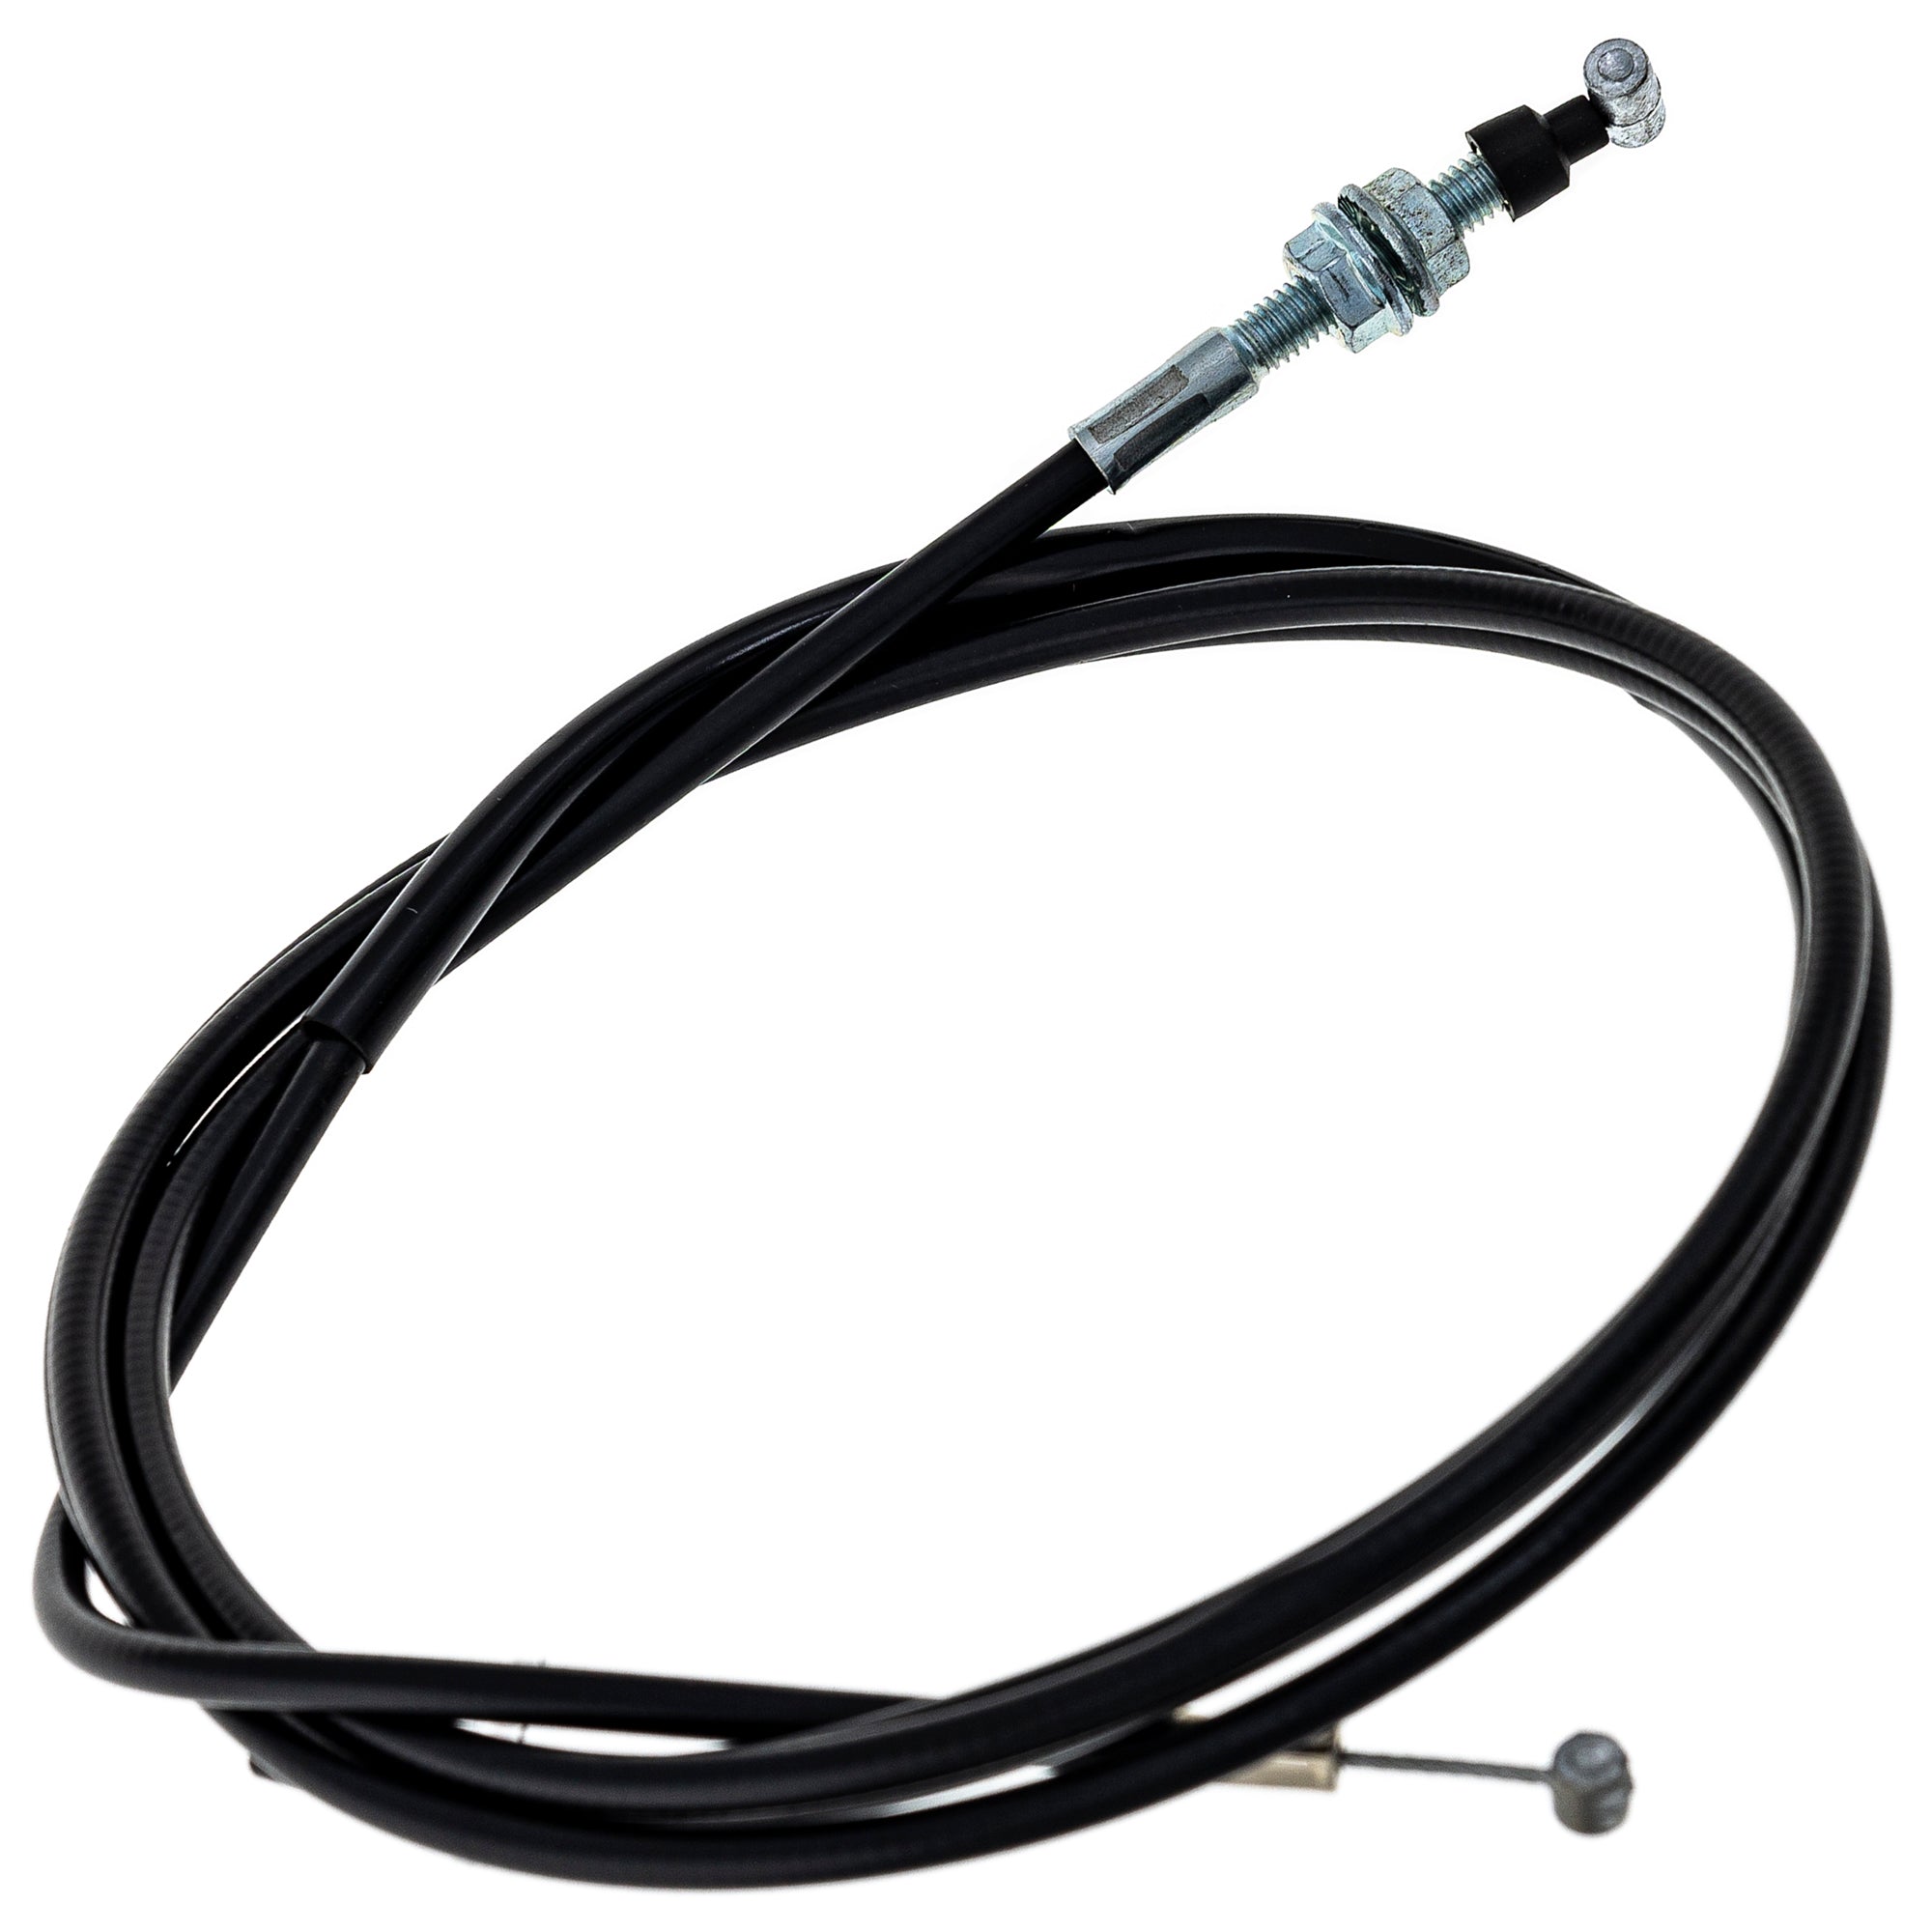 Reverse Cable for Honda TRX300 TRX300EX TRX300FW 22880-HC5-970